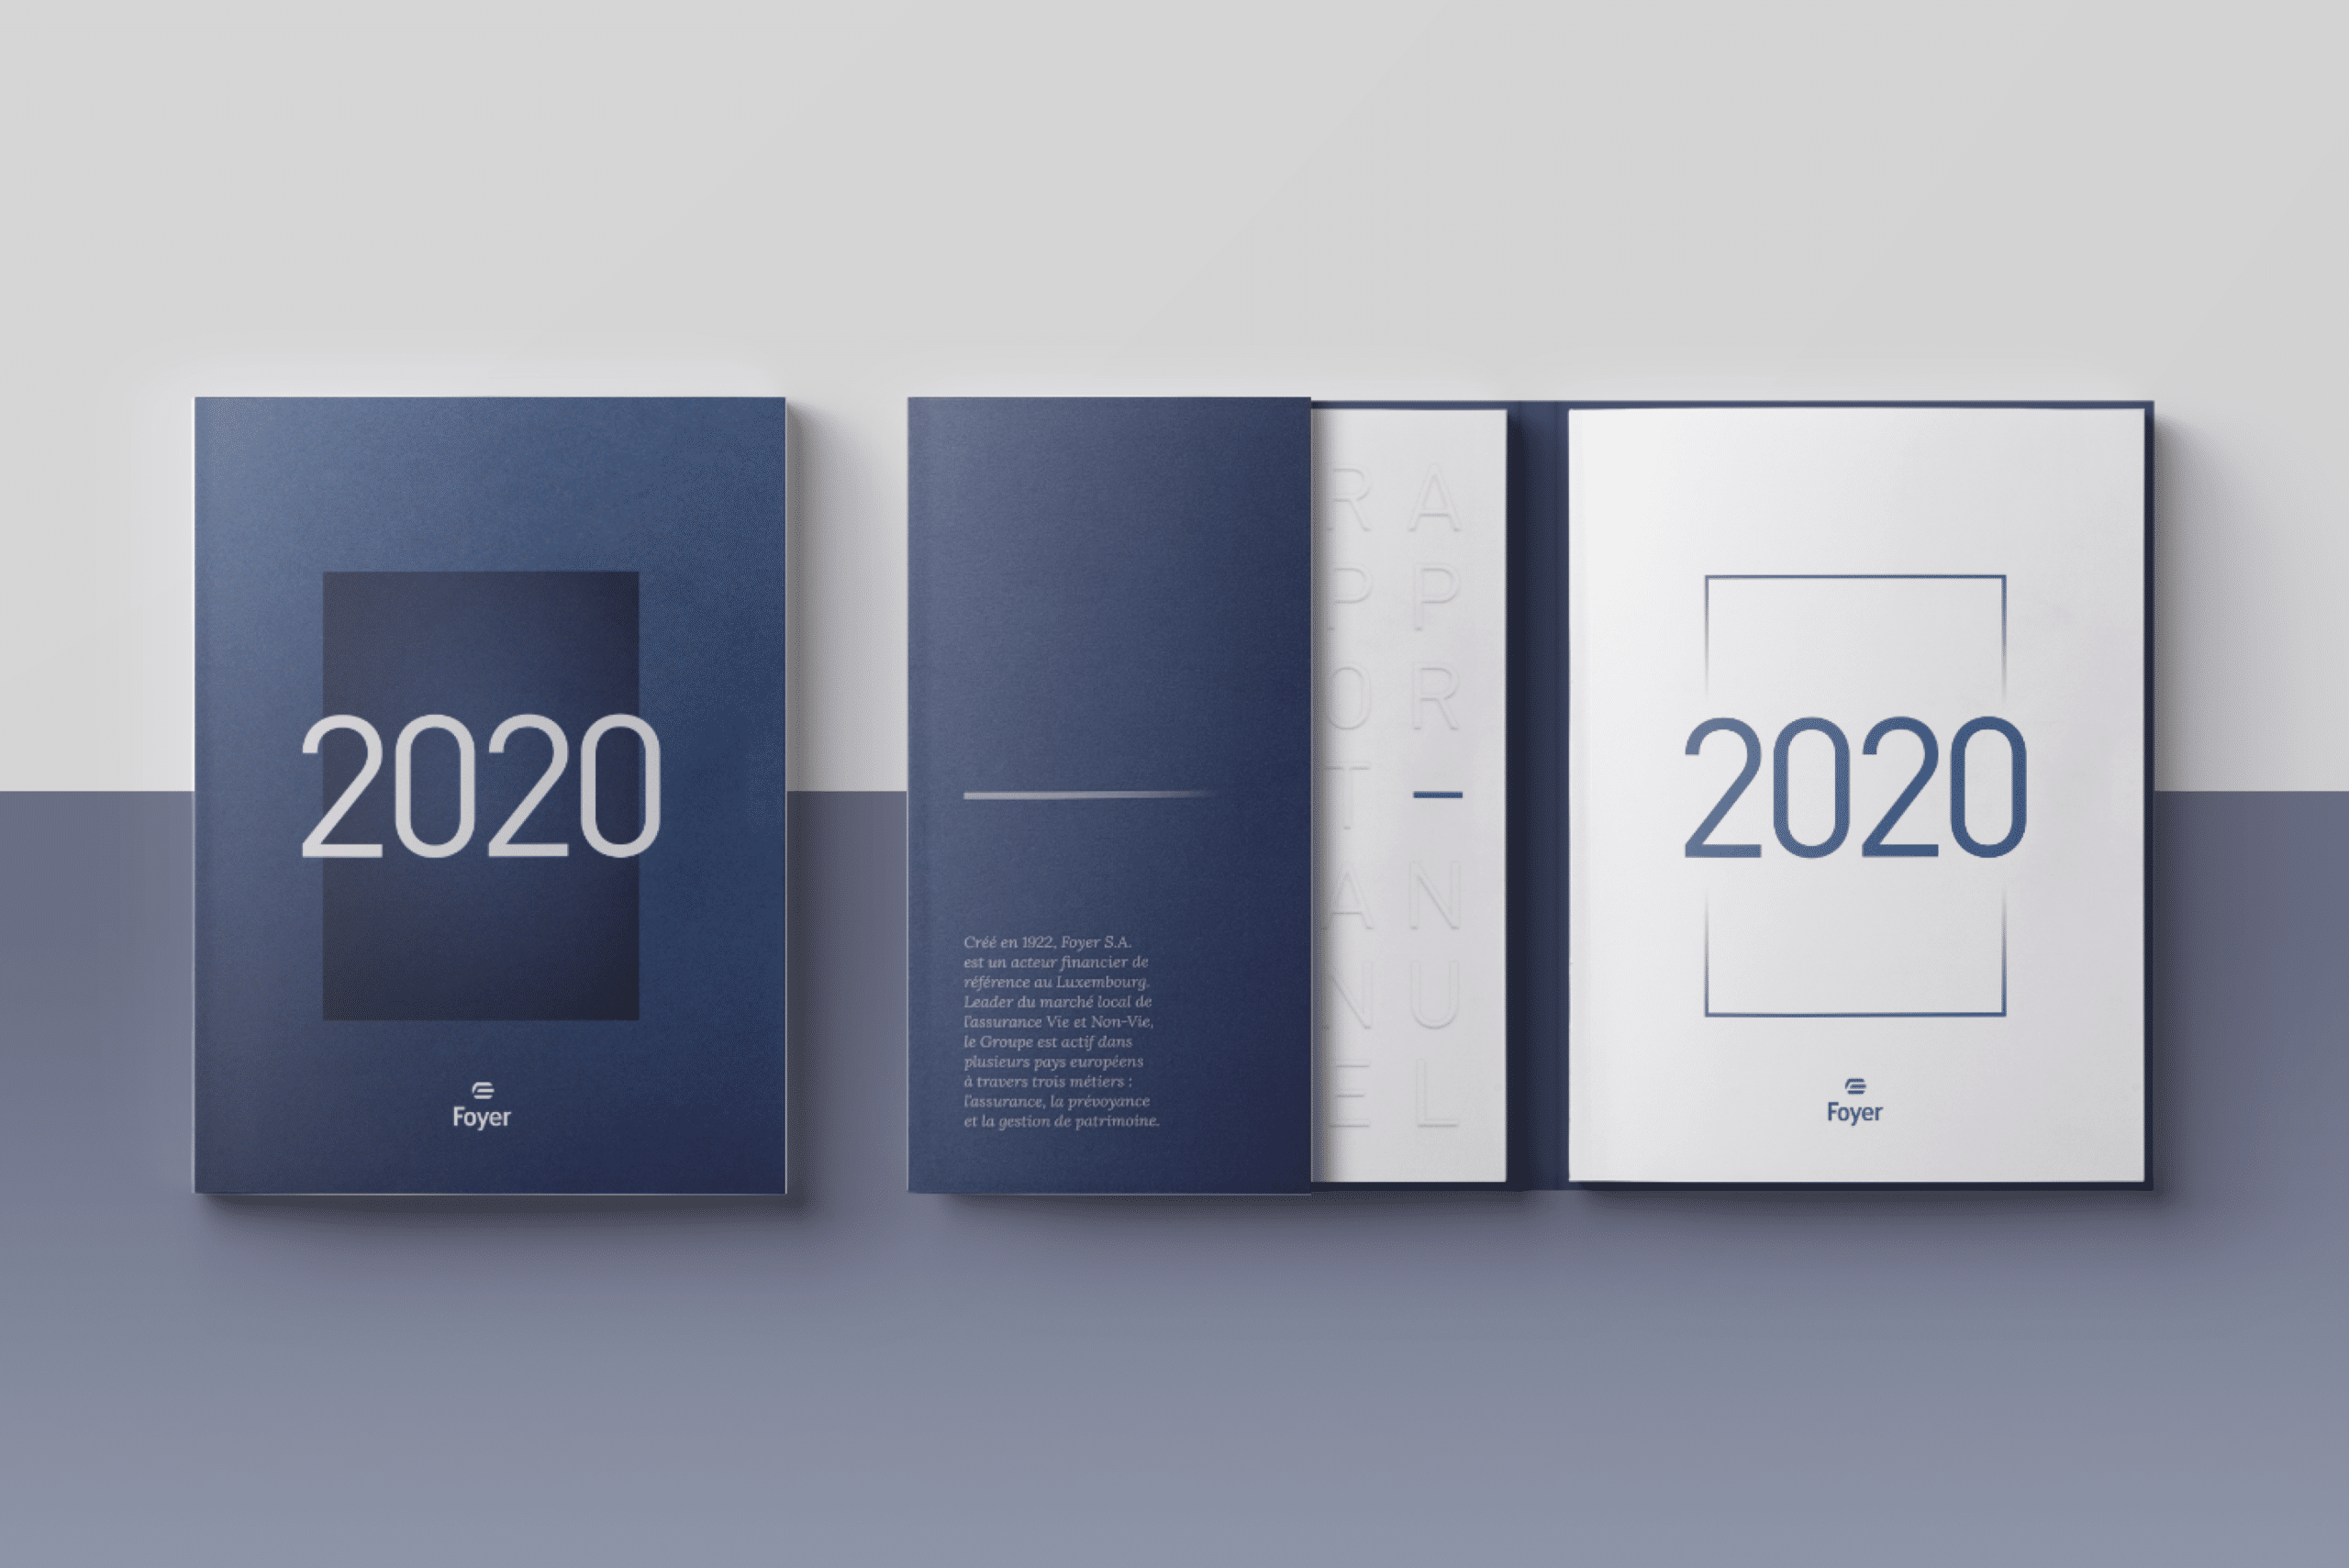 Trois rapports annuels de Foyer alignés, avec des couvertures en nuances de bleu, affichant le texte '2020' de manière proéminente; le rapport du milieu montre le texte 'RAPPORT ANNUEL' en relief sur la couverture.